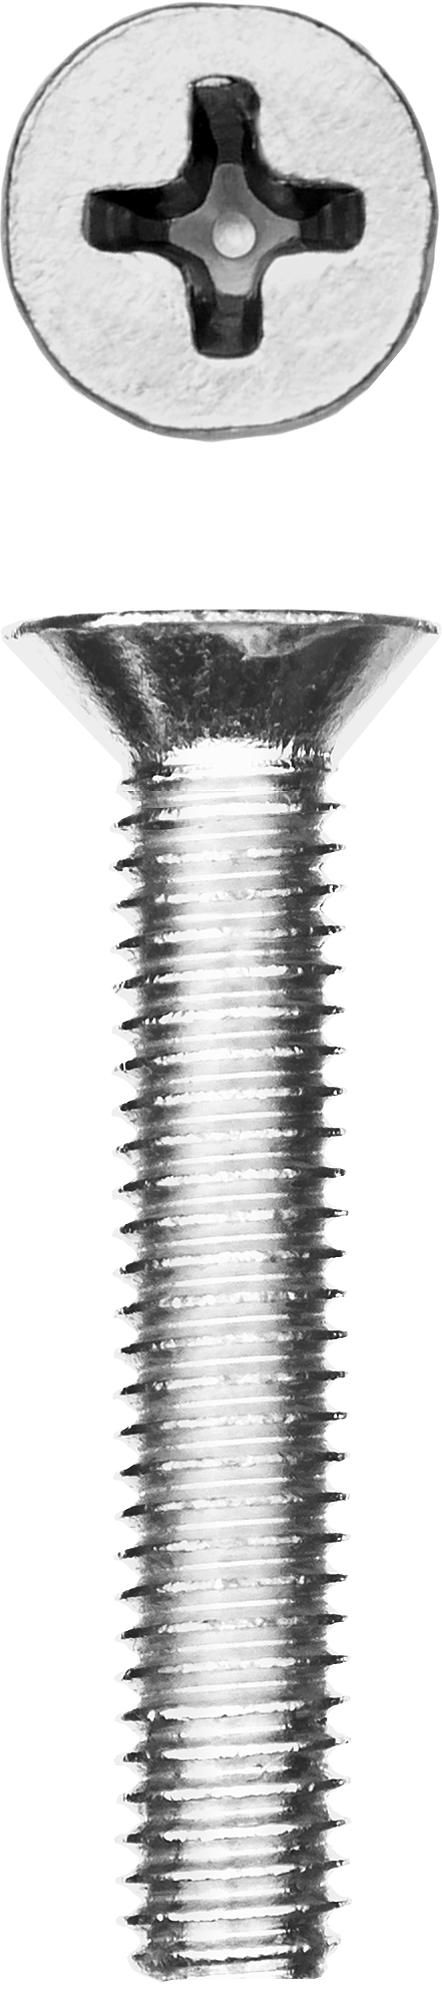 Винт с потайной головкой Зубр 303116-04-025, М4, 2.5 см, 965 DIN, 4 мм, оцинкованная сталь, 15 шт., фасовка (303116-04-025)